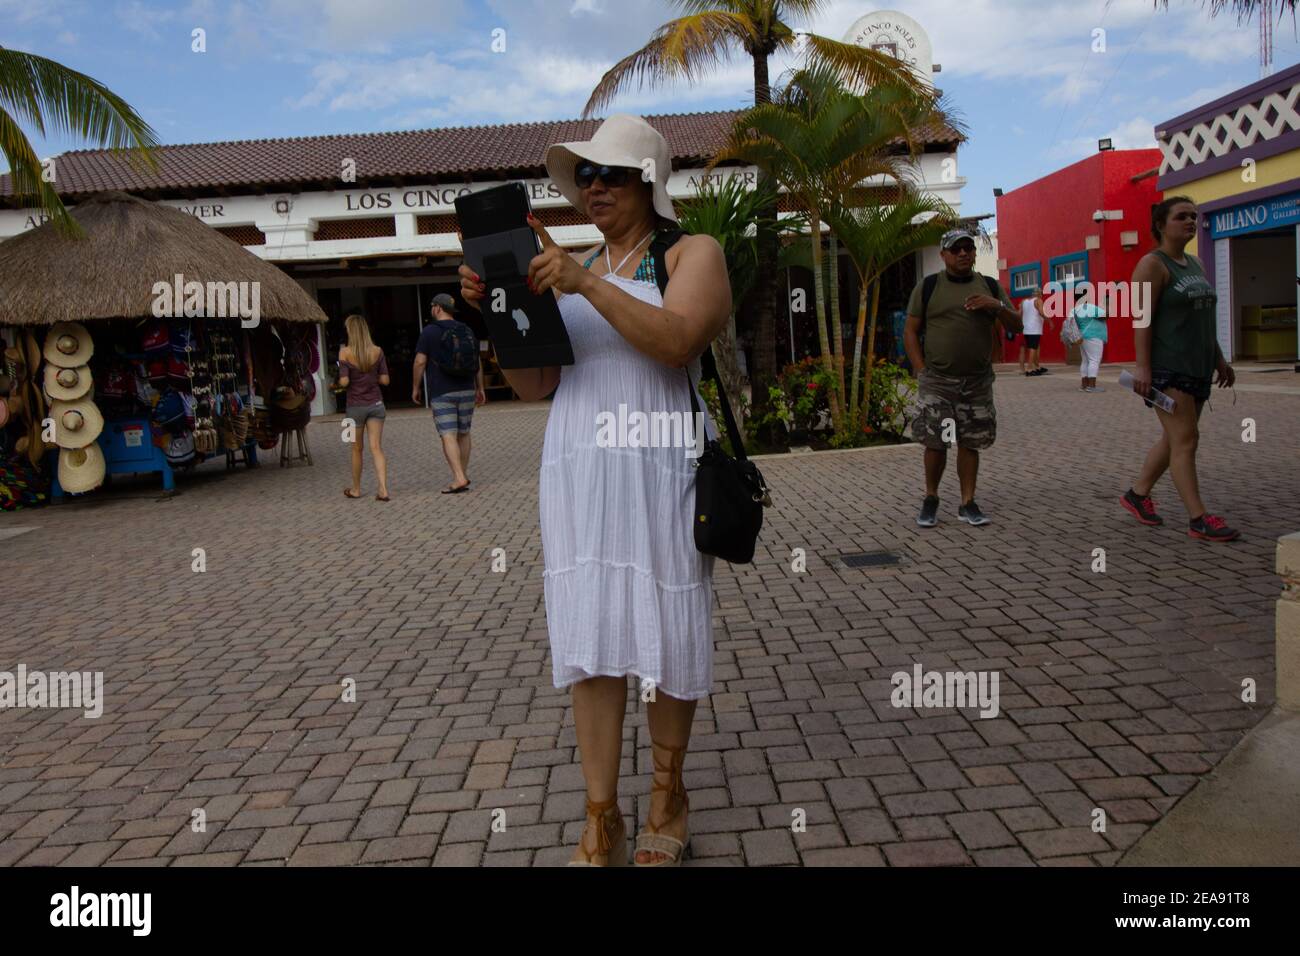 Turista tomando fotos con una tableta en Cozumel México Foto de stock